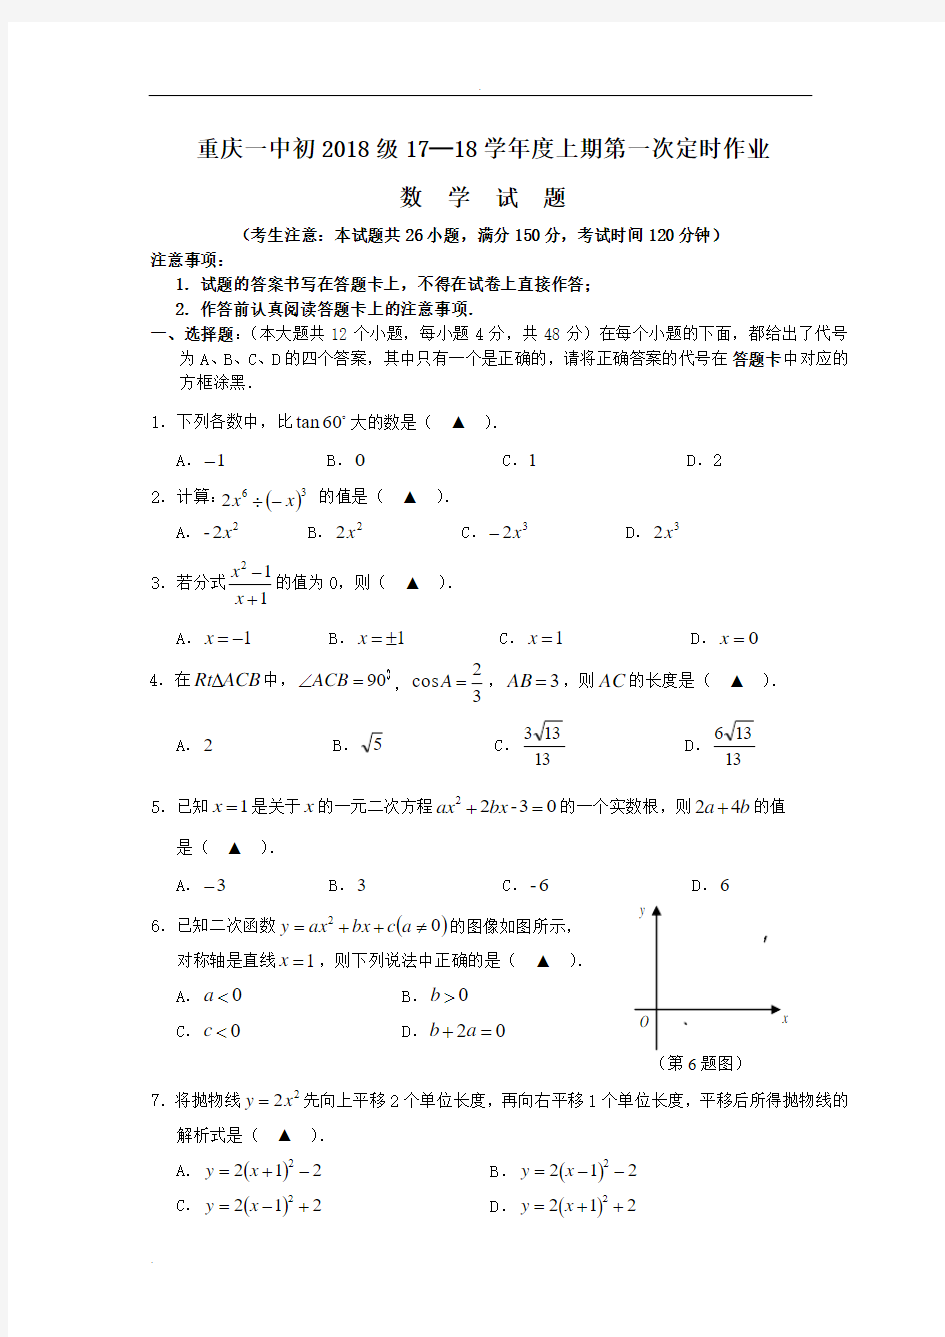 初2018级重庆名校联考数学试题